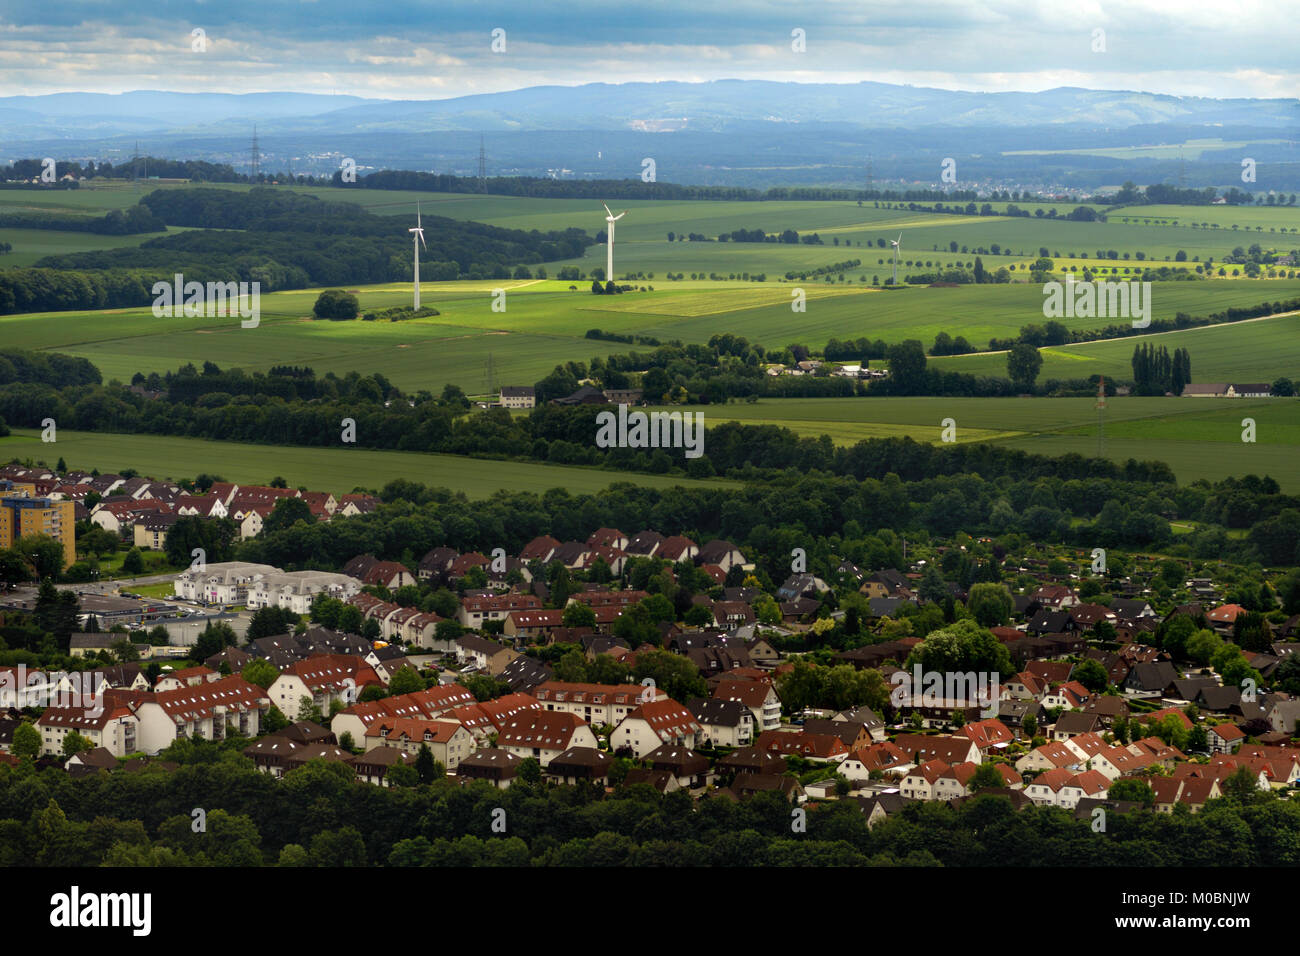 In der Nähe von Dortmund, Deutschland - Juni 22, 2013: Luftaufnahme der ländlichen Landschaft Nordrhein-Westfalens. Es ist das bevölkerungsreichste Bundesland der Bundesrepublik Deutschland und der f Stockfoto